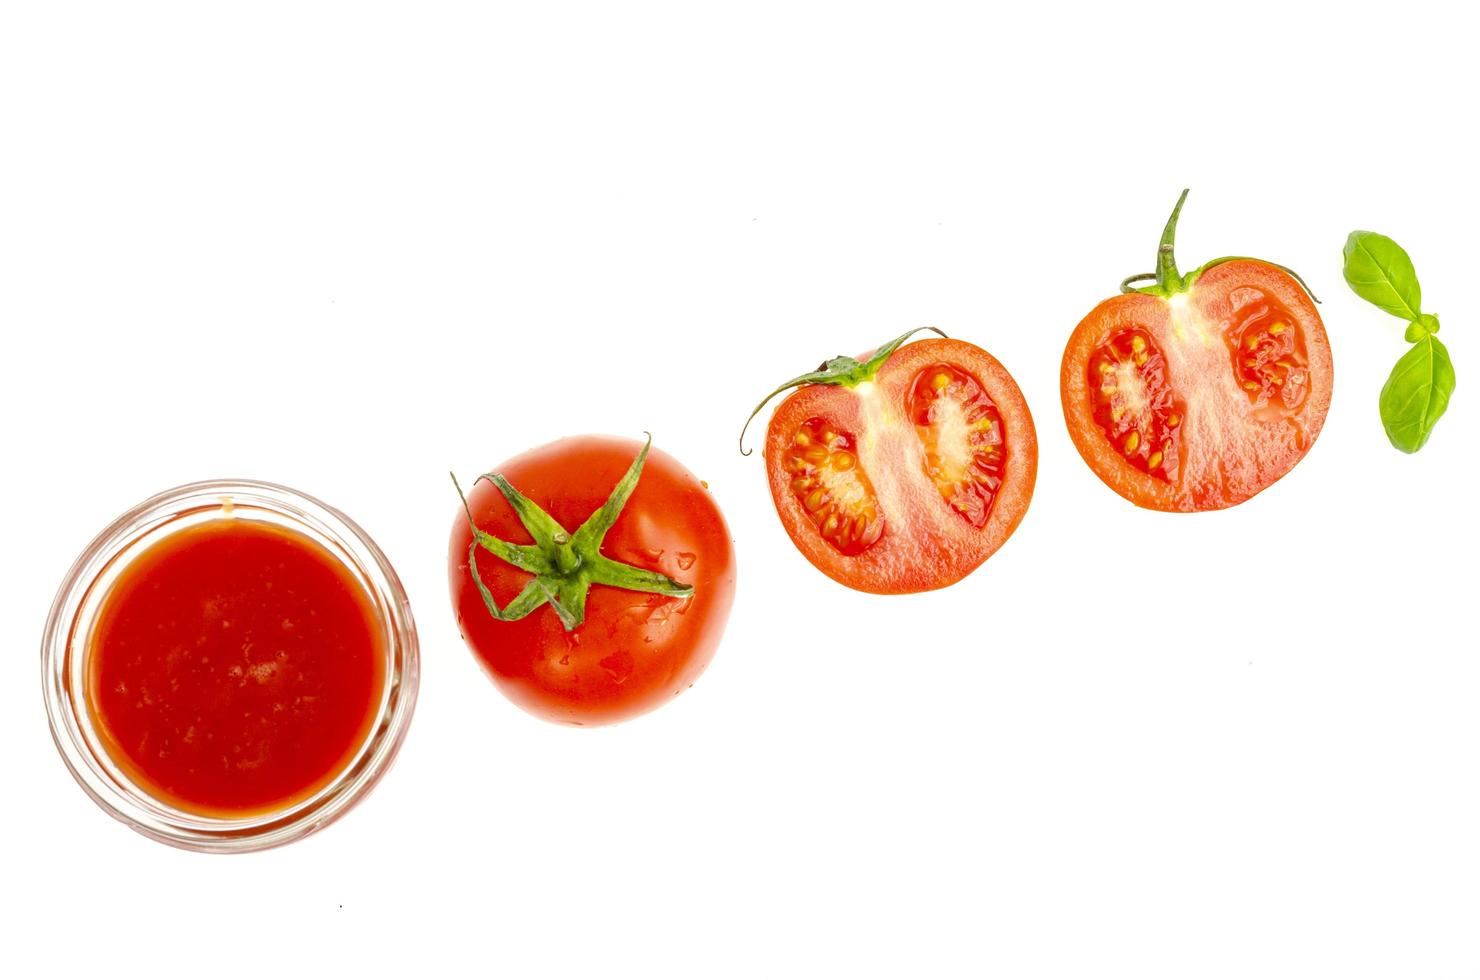 copo de suco de tomate natural, tomates vermelhos frescos em fundo branco. foto